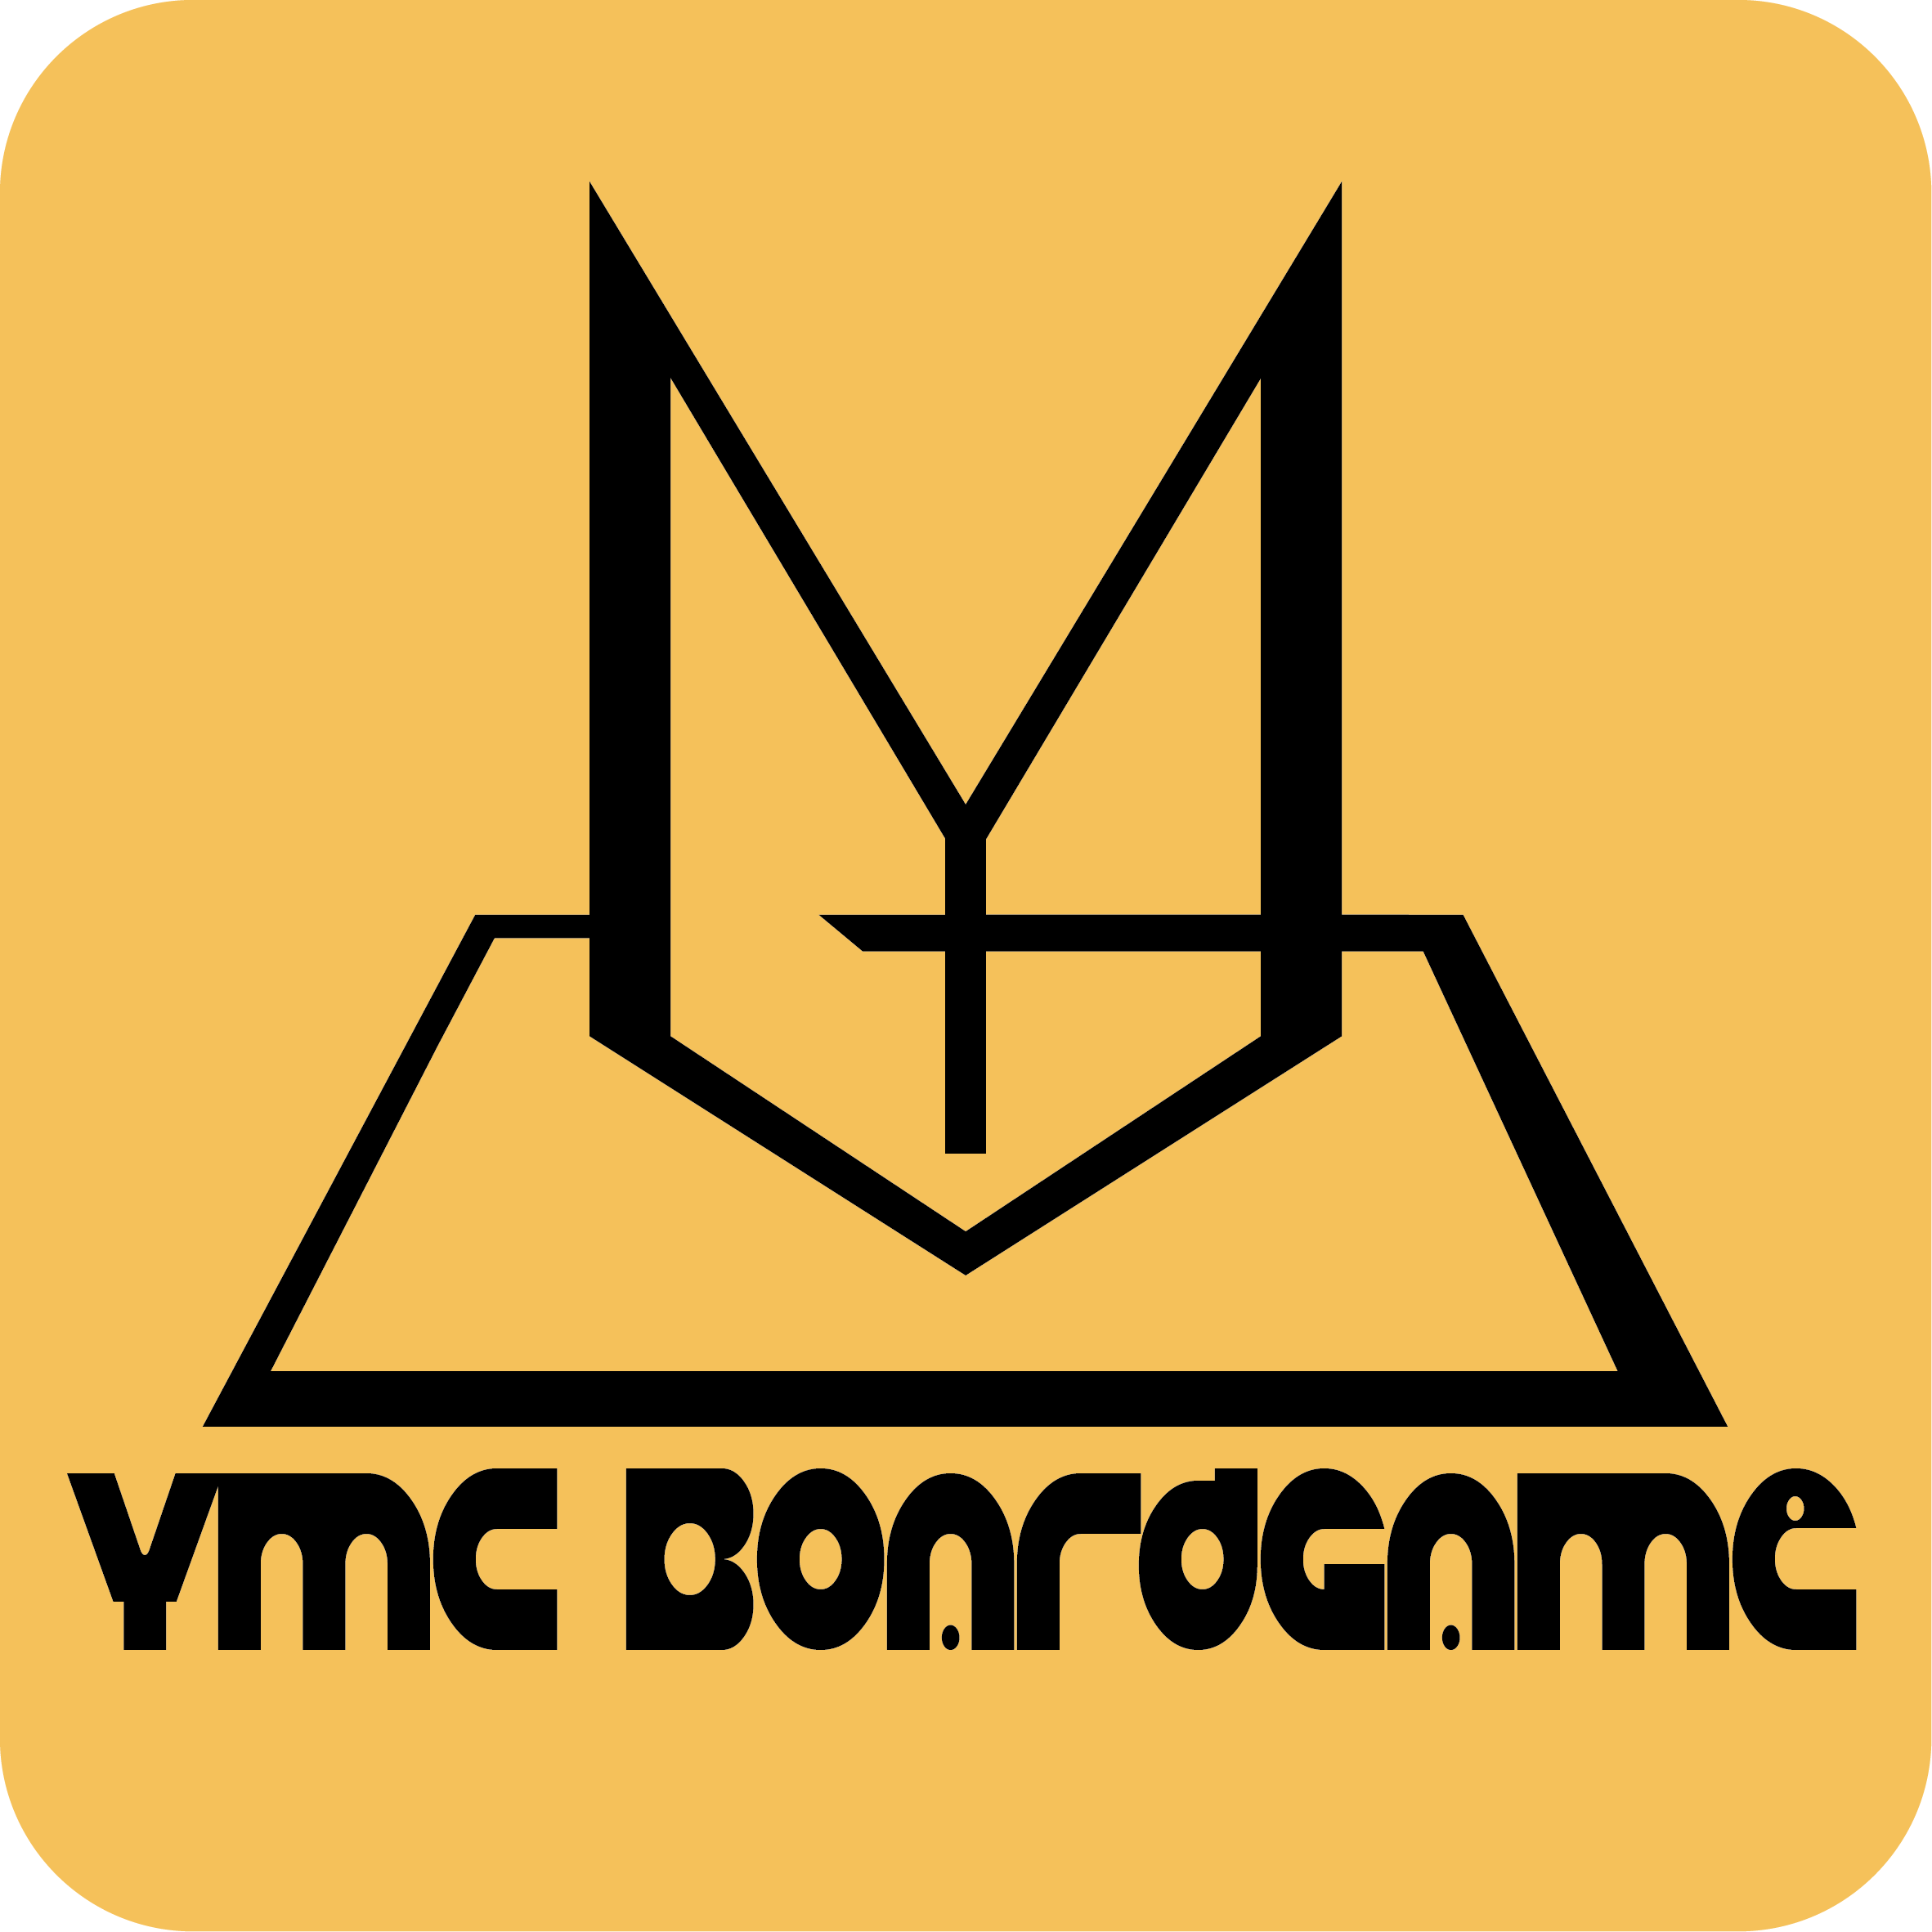 YMC Boardgame